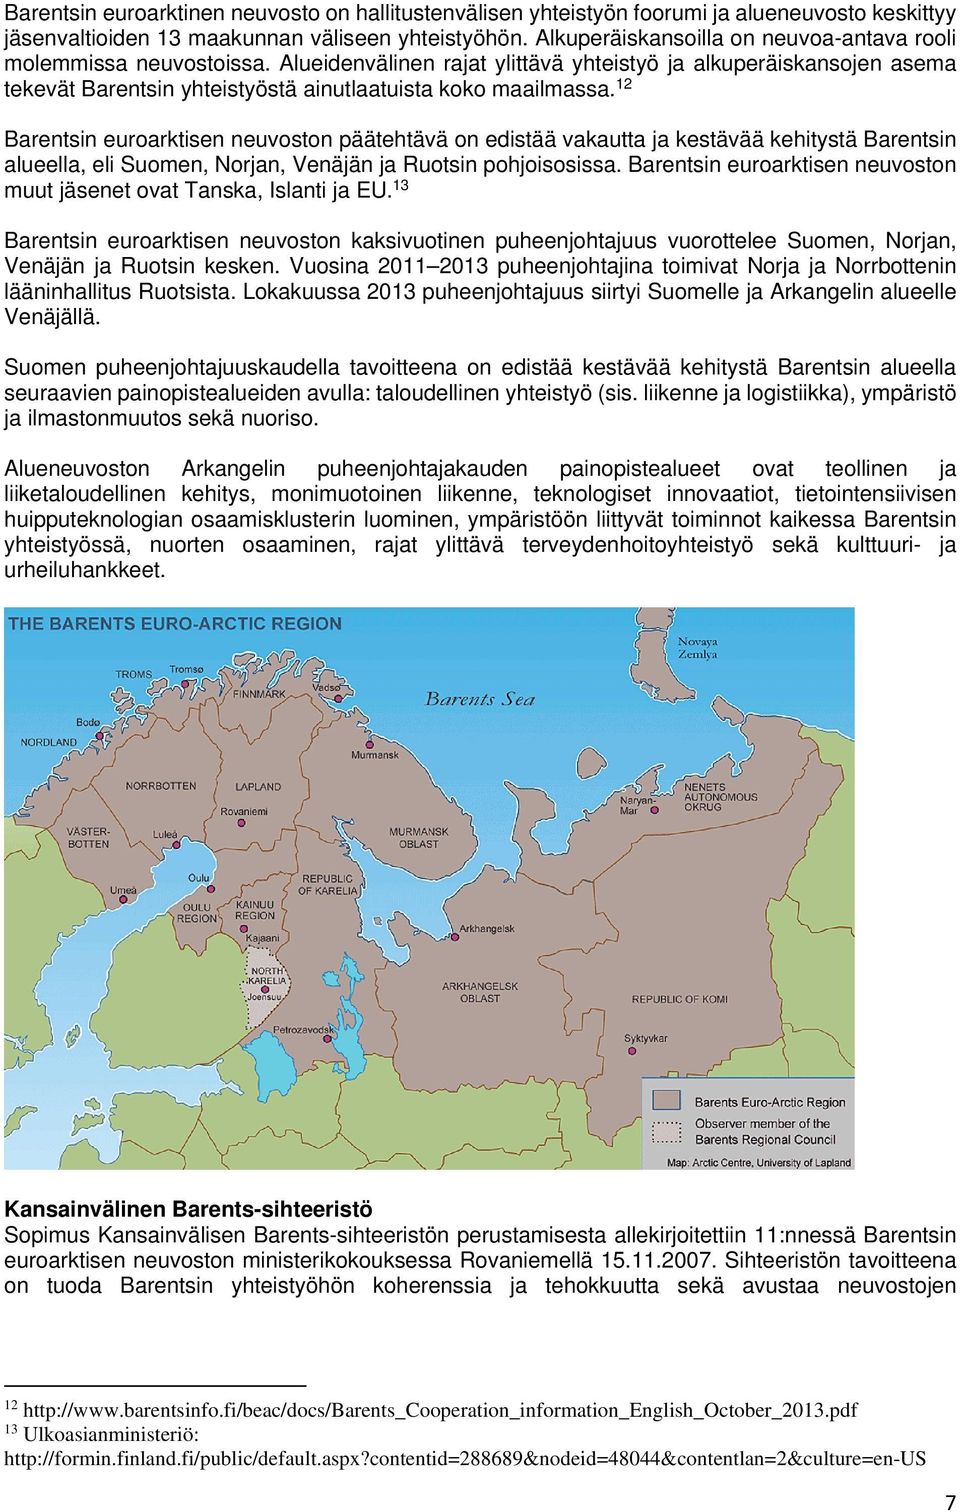 12 Barentsin euroarktisen neuvoston päätehtävä on edistää vakautta ja kestävää kehitystä Barentsin alueella, eli Suomen, Norjan, Venäjän ja Ruotsin pohjoisosissa.